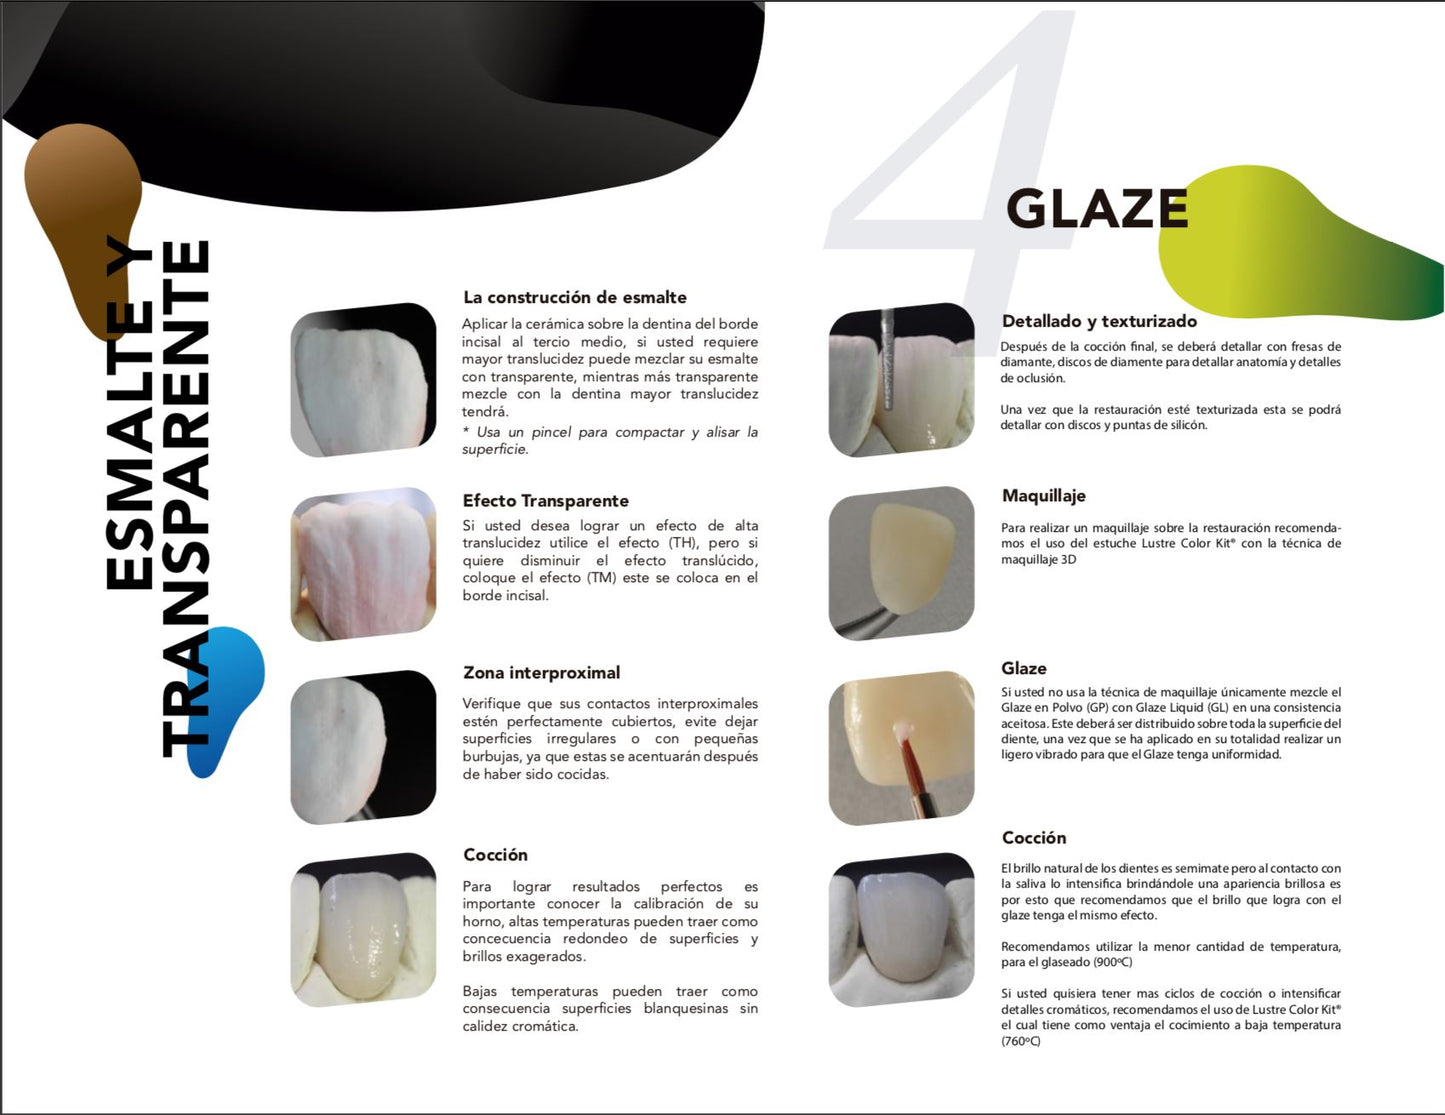 Ceramik - T - efectos - Transparentes tarro 6gr. CLEMDE Dental 